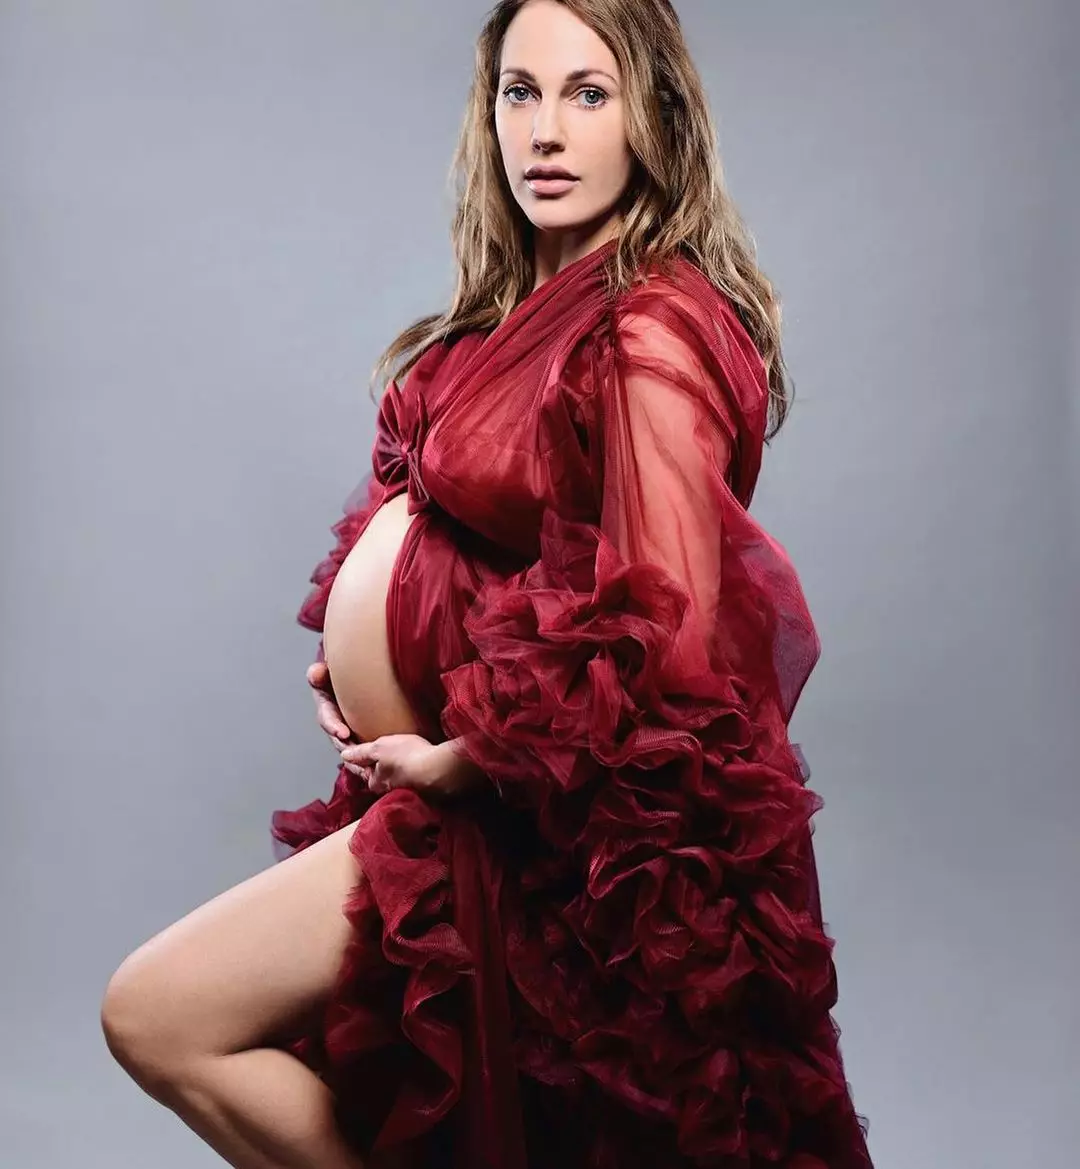 Мерьем Узерли на последнем месяце беременности